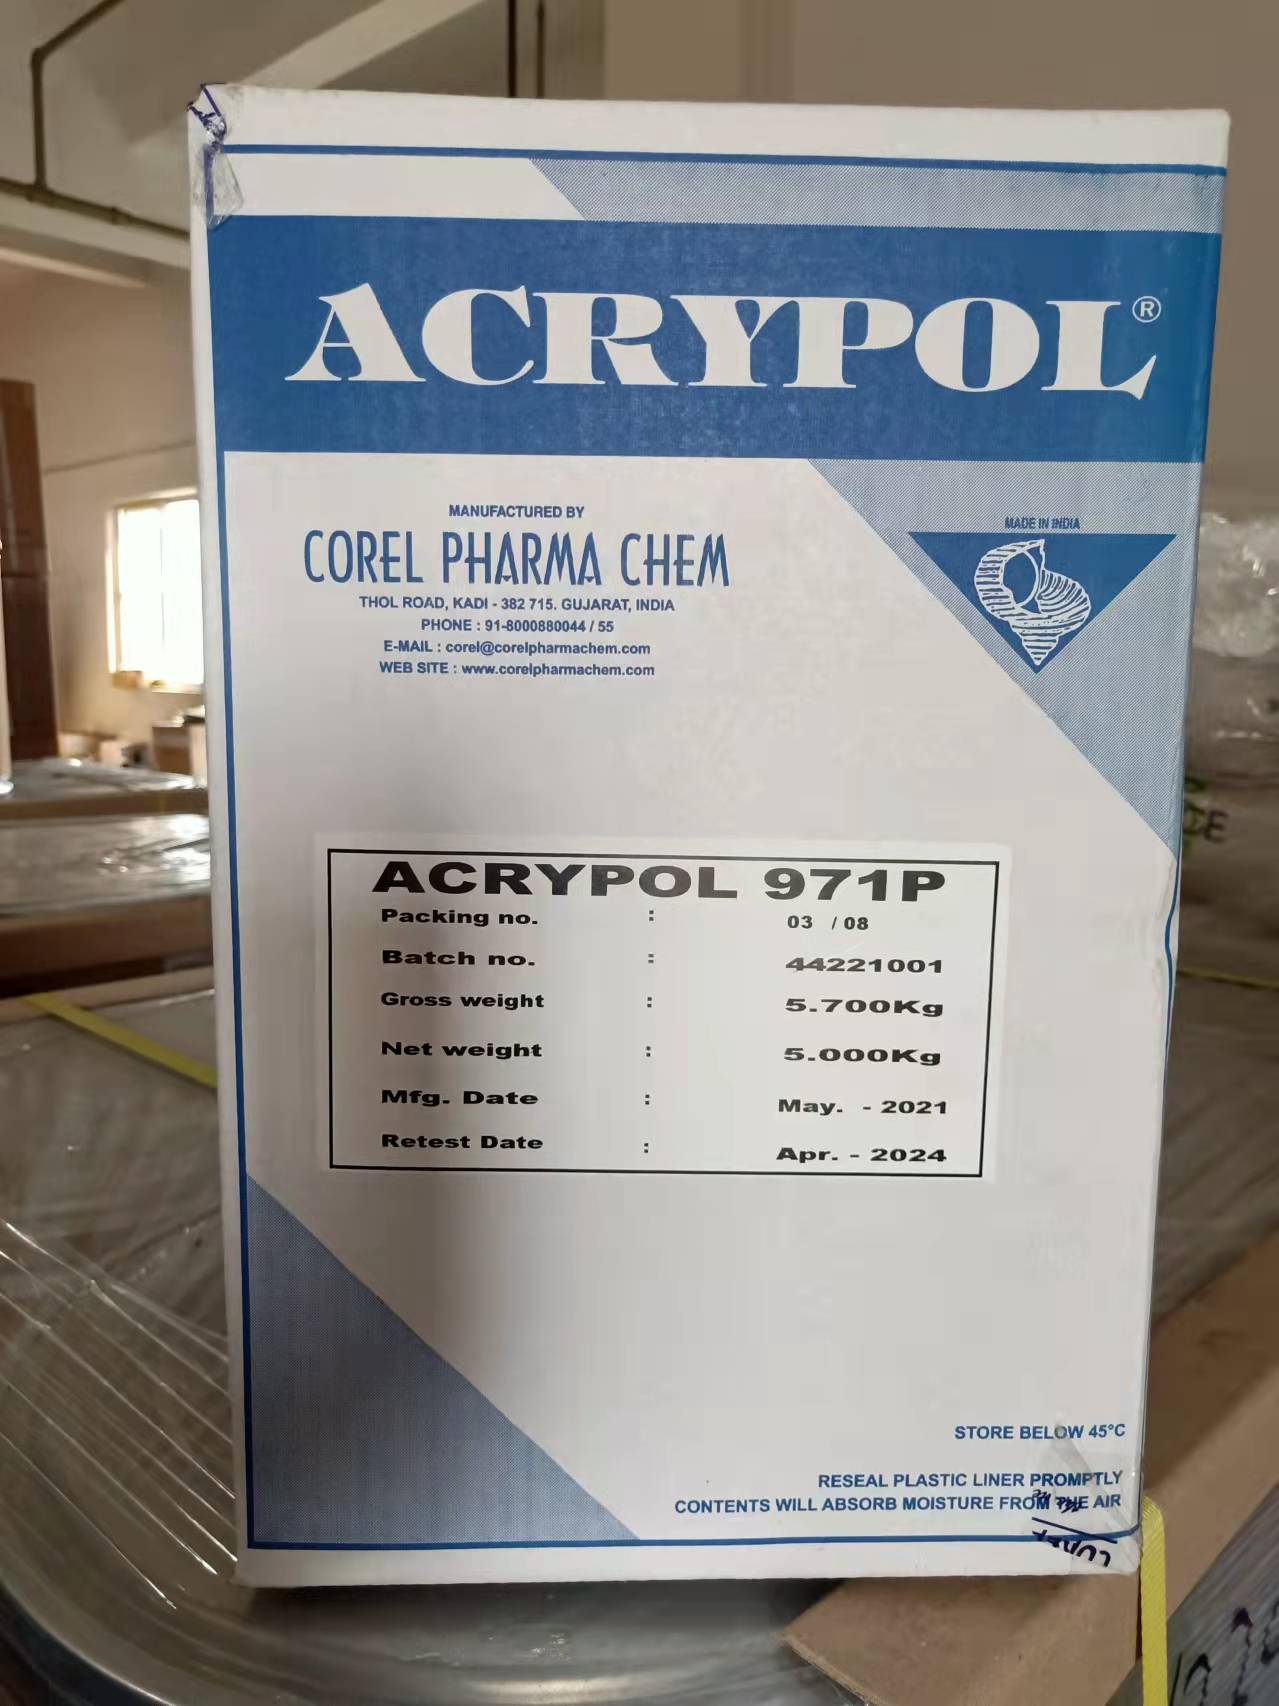 Acrypol® 971P